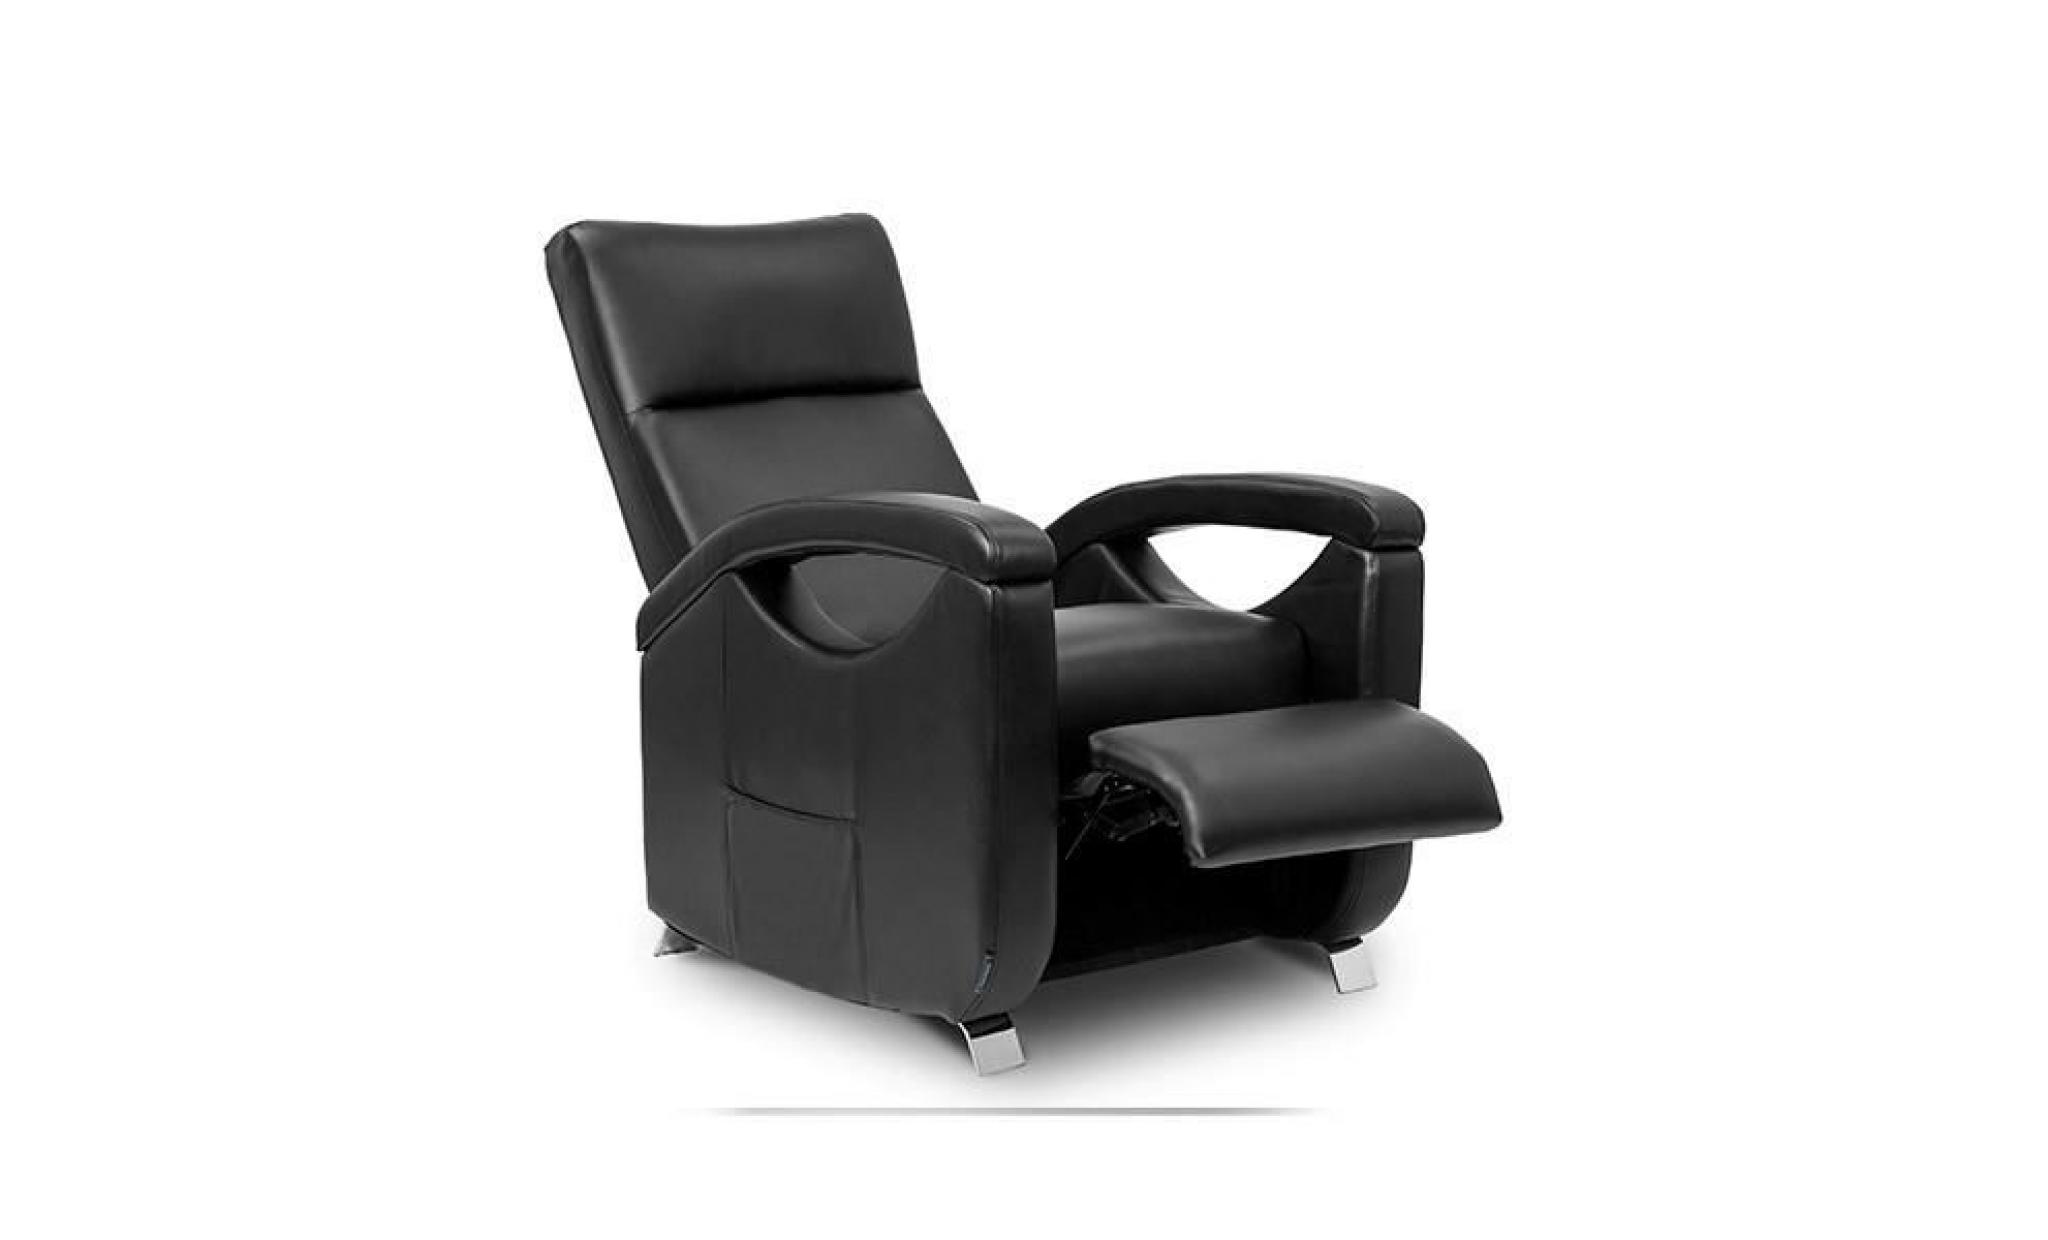 fauteuil relax masseur push back noir cecorelax 6025 pas cher